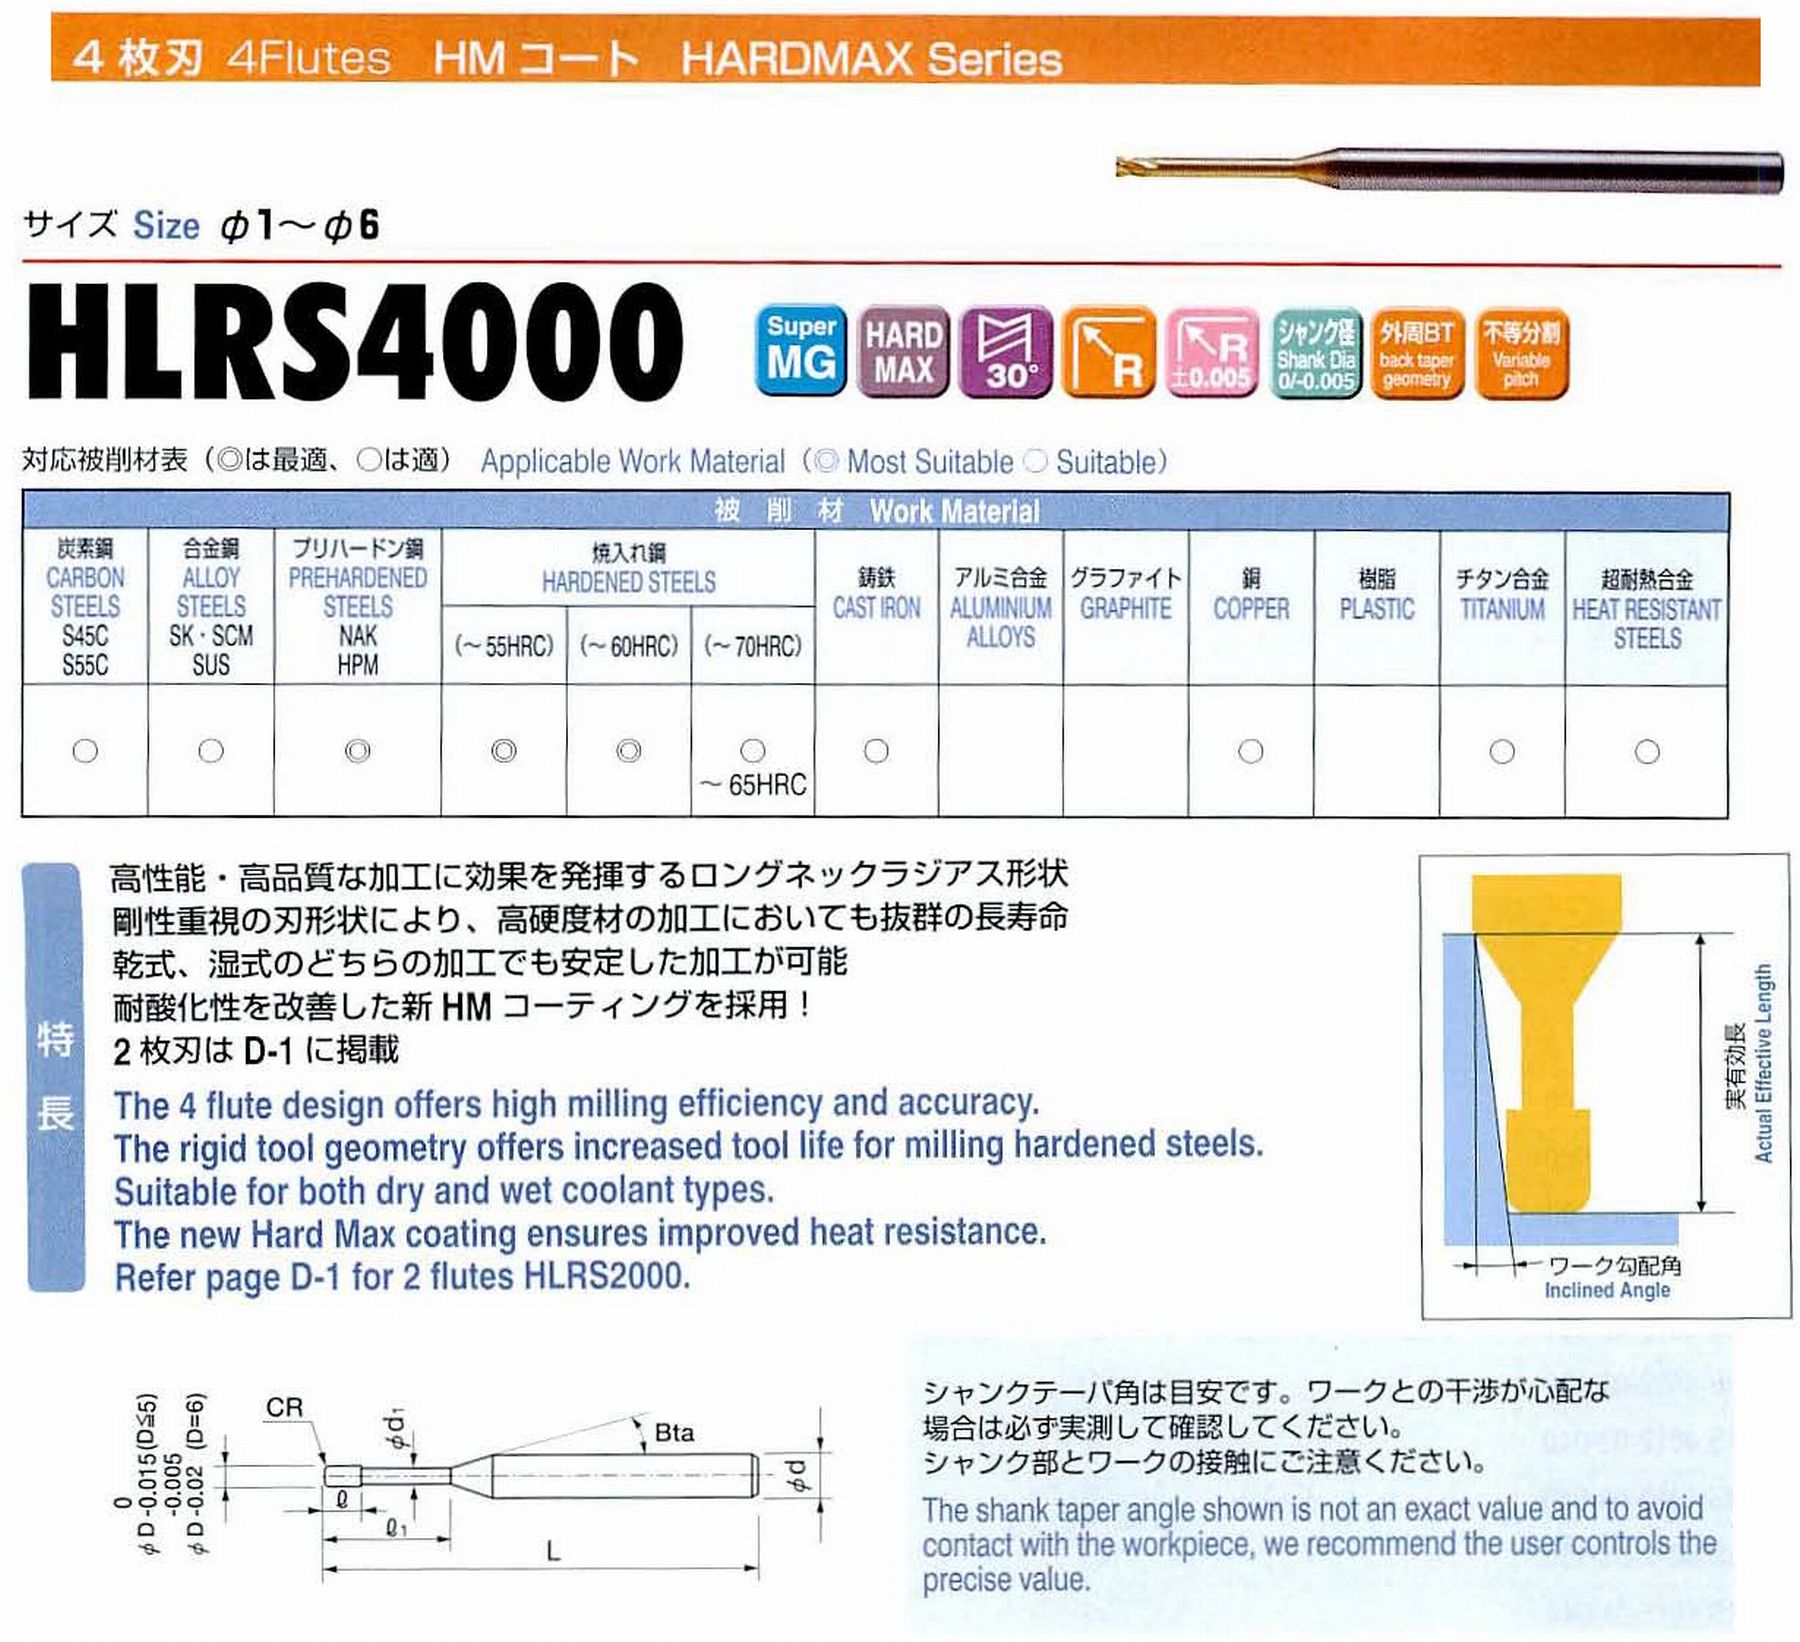 ユニオンツール 4枚刃 HLRS4015-01-080 外径1.5 コーナ半径R0.1 有効長8 刃長1.2 首径1.15 シャンクテーパ角16° 全長50 シャンク径4